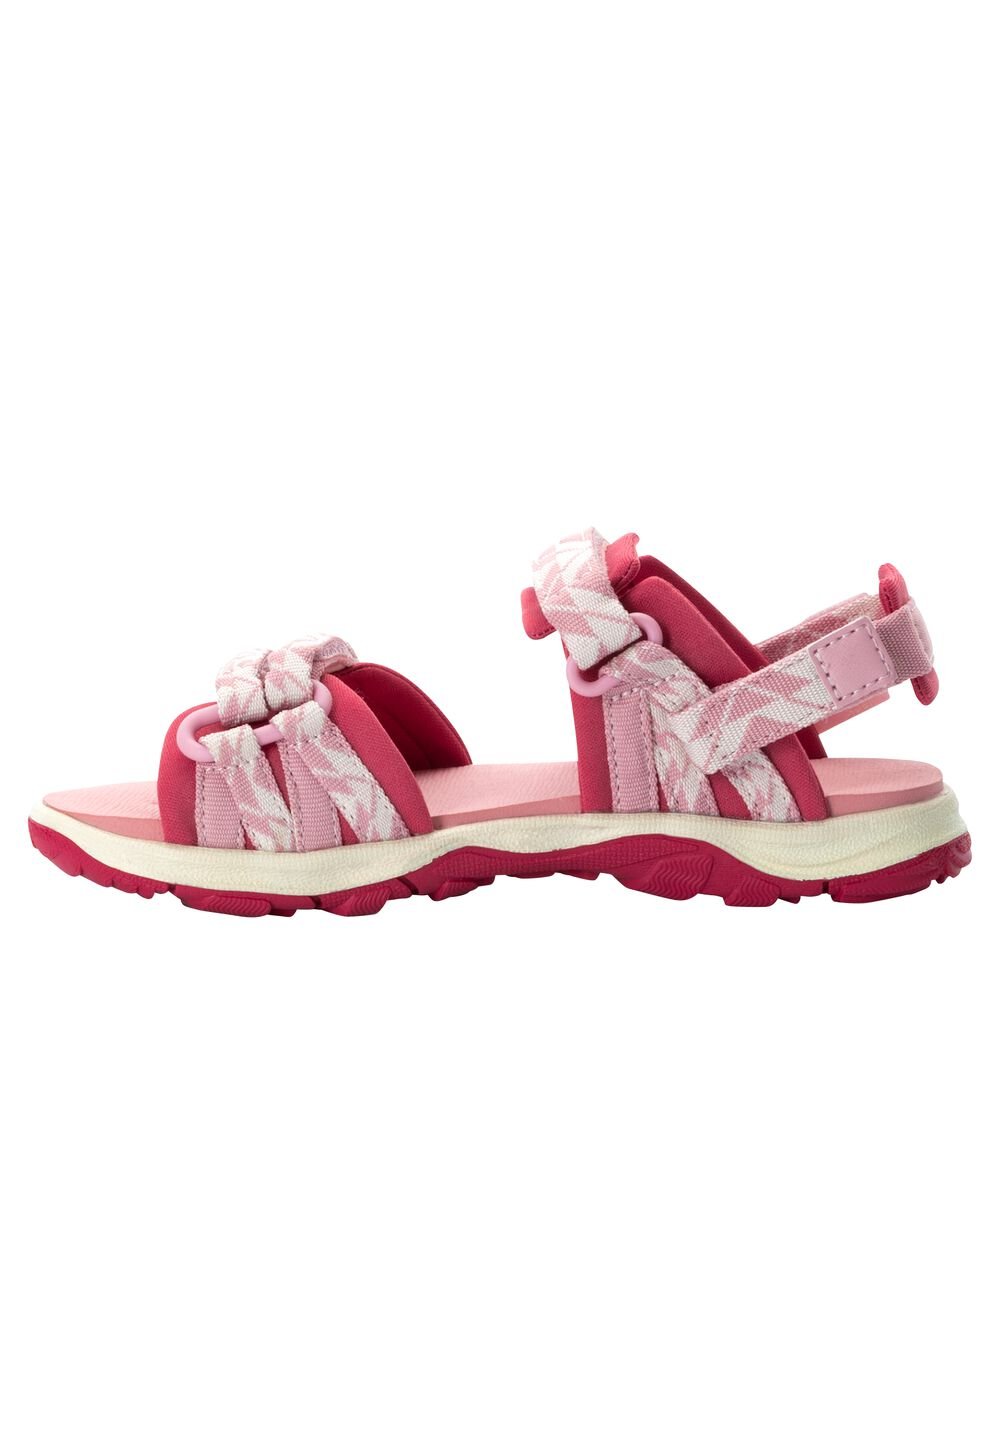 Jack Wolfskin 2 IN 1 Sandal Kids Kinderen sandalen 37 soft pink soft pink